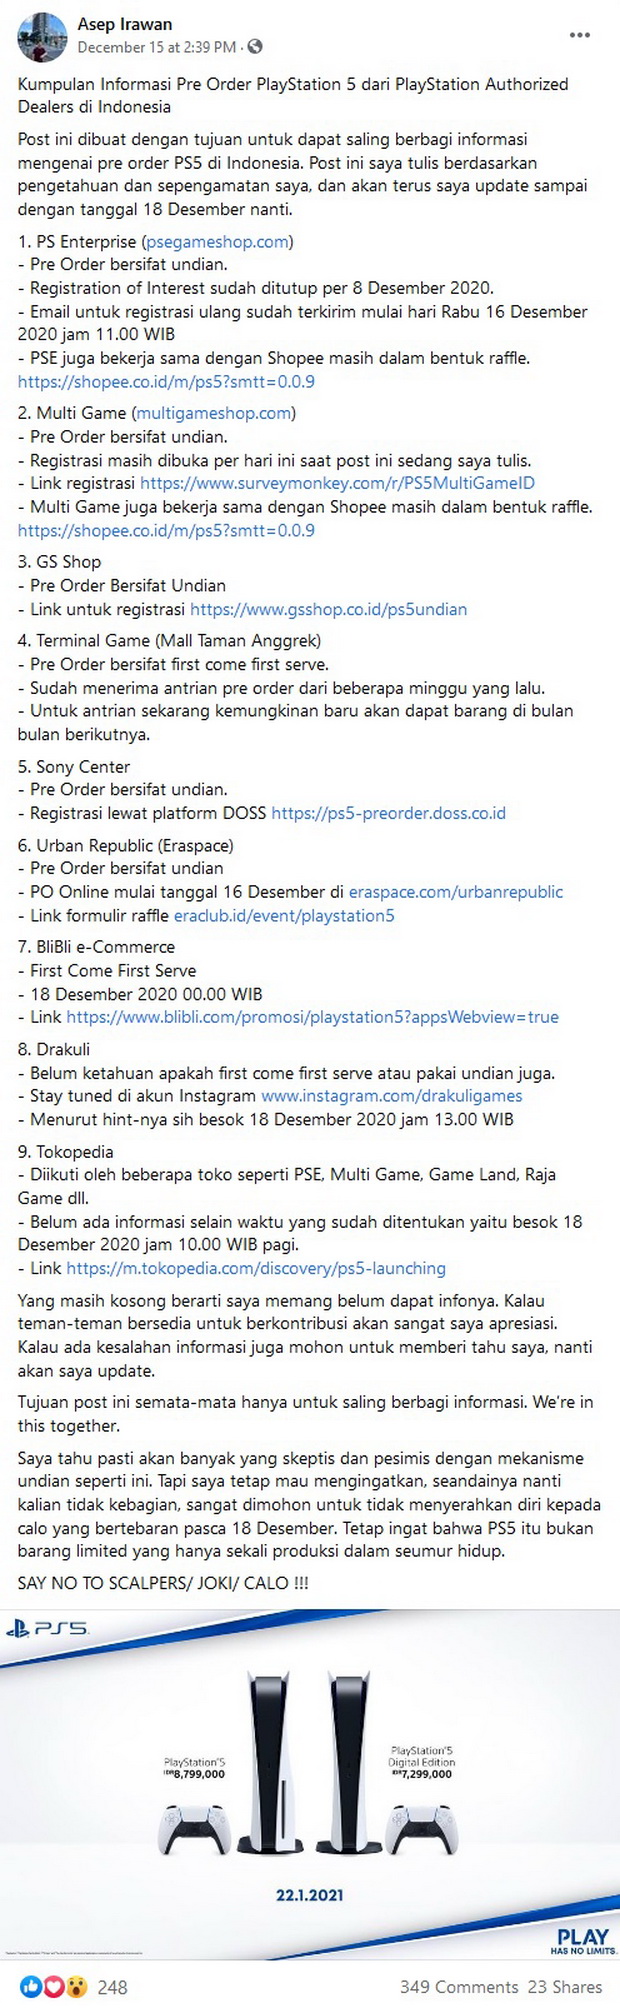 Dimulai Hari Ini Informasi Seputar Pre Order Playstation 5 Di Indonesia 